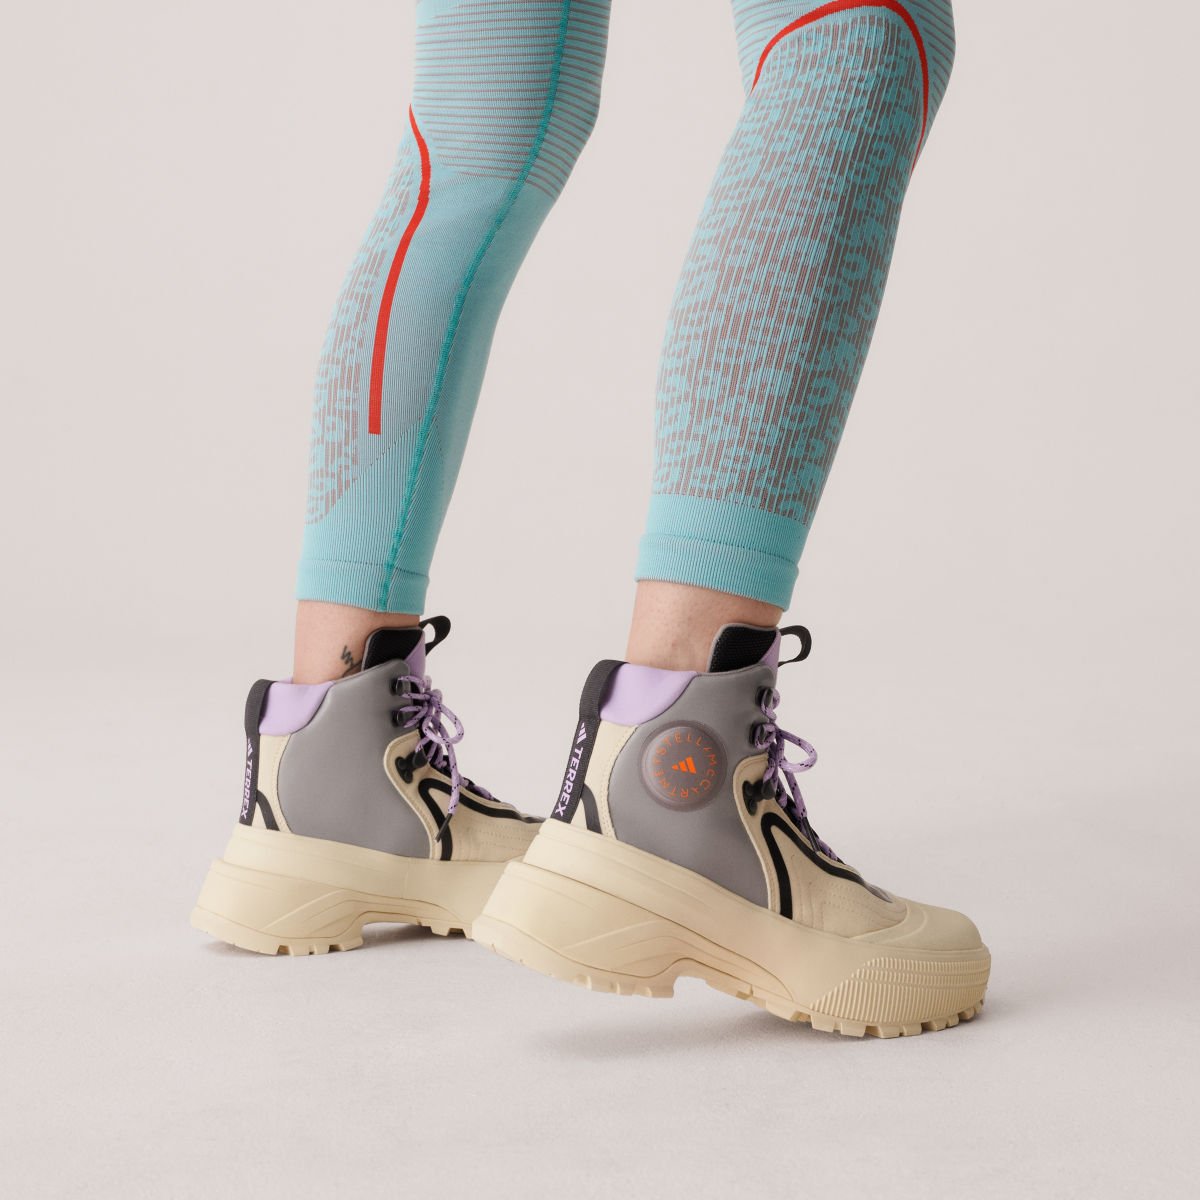 Adidas Scarpe da hiking adidas by Stella McCartney x Terrex. 7